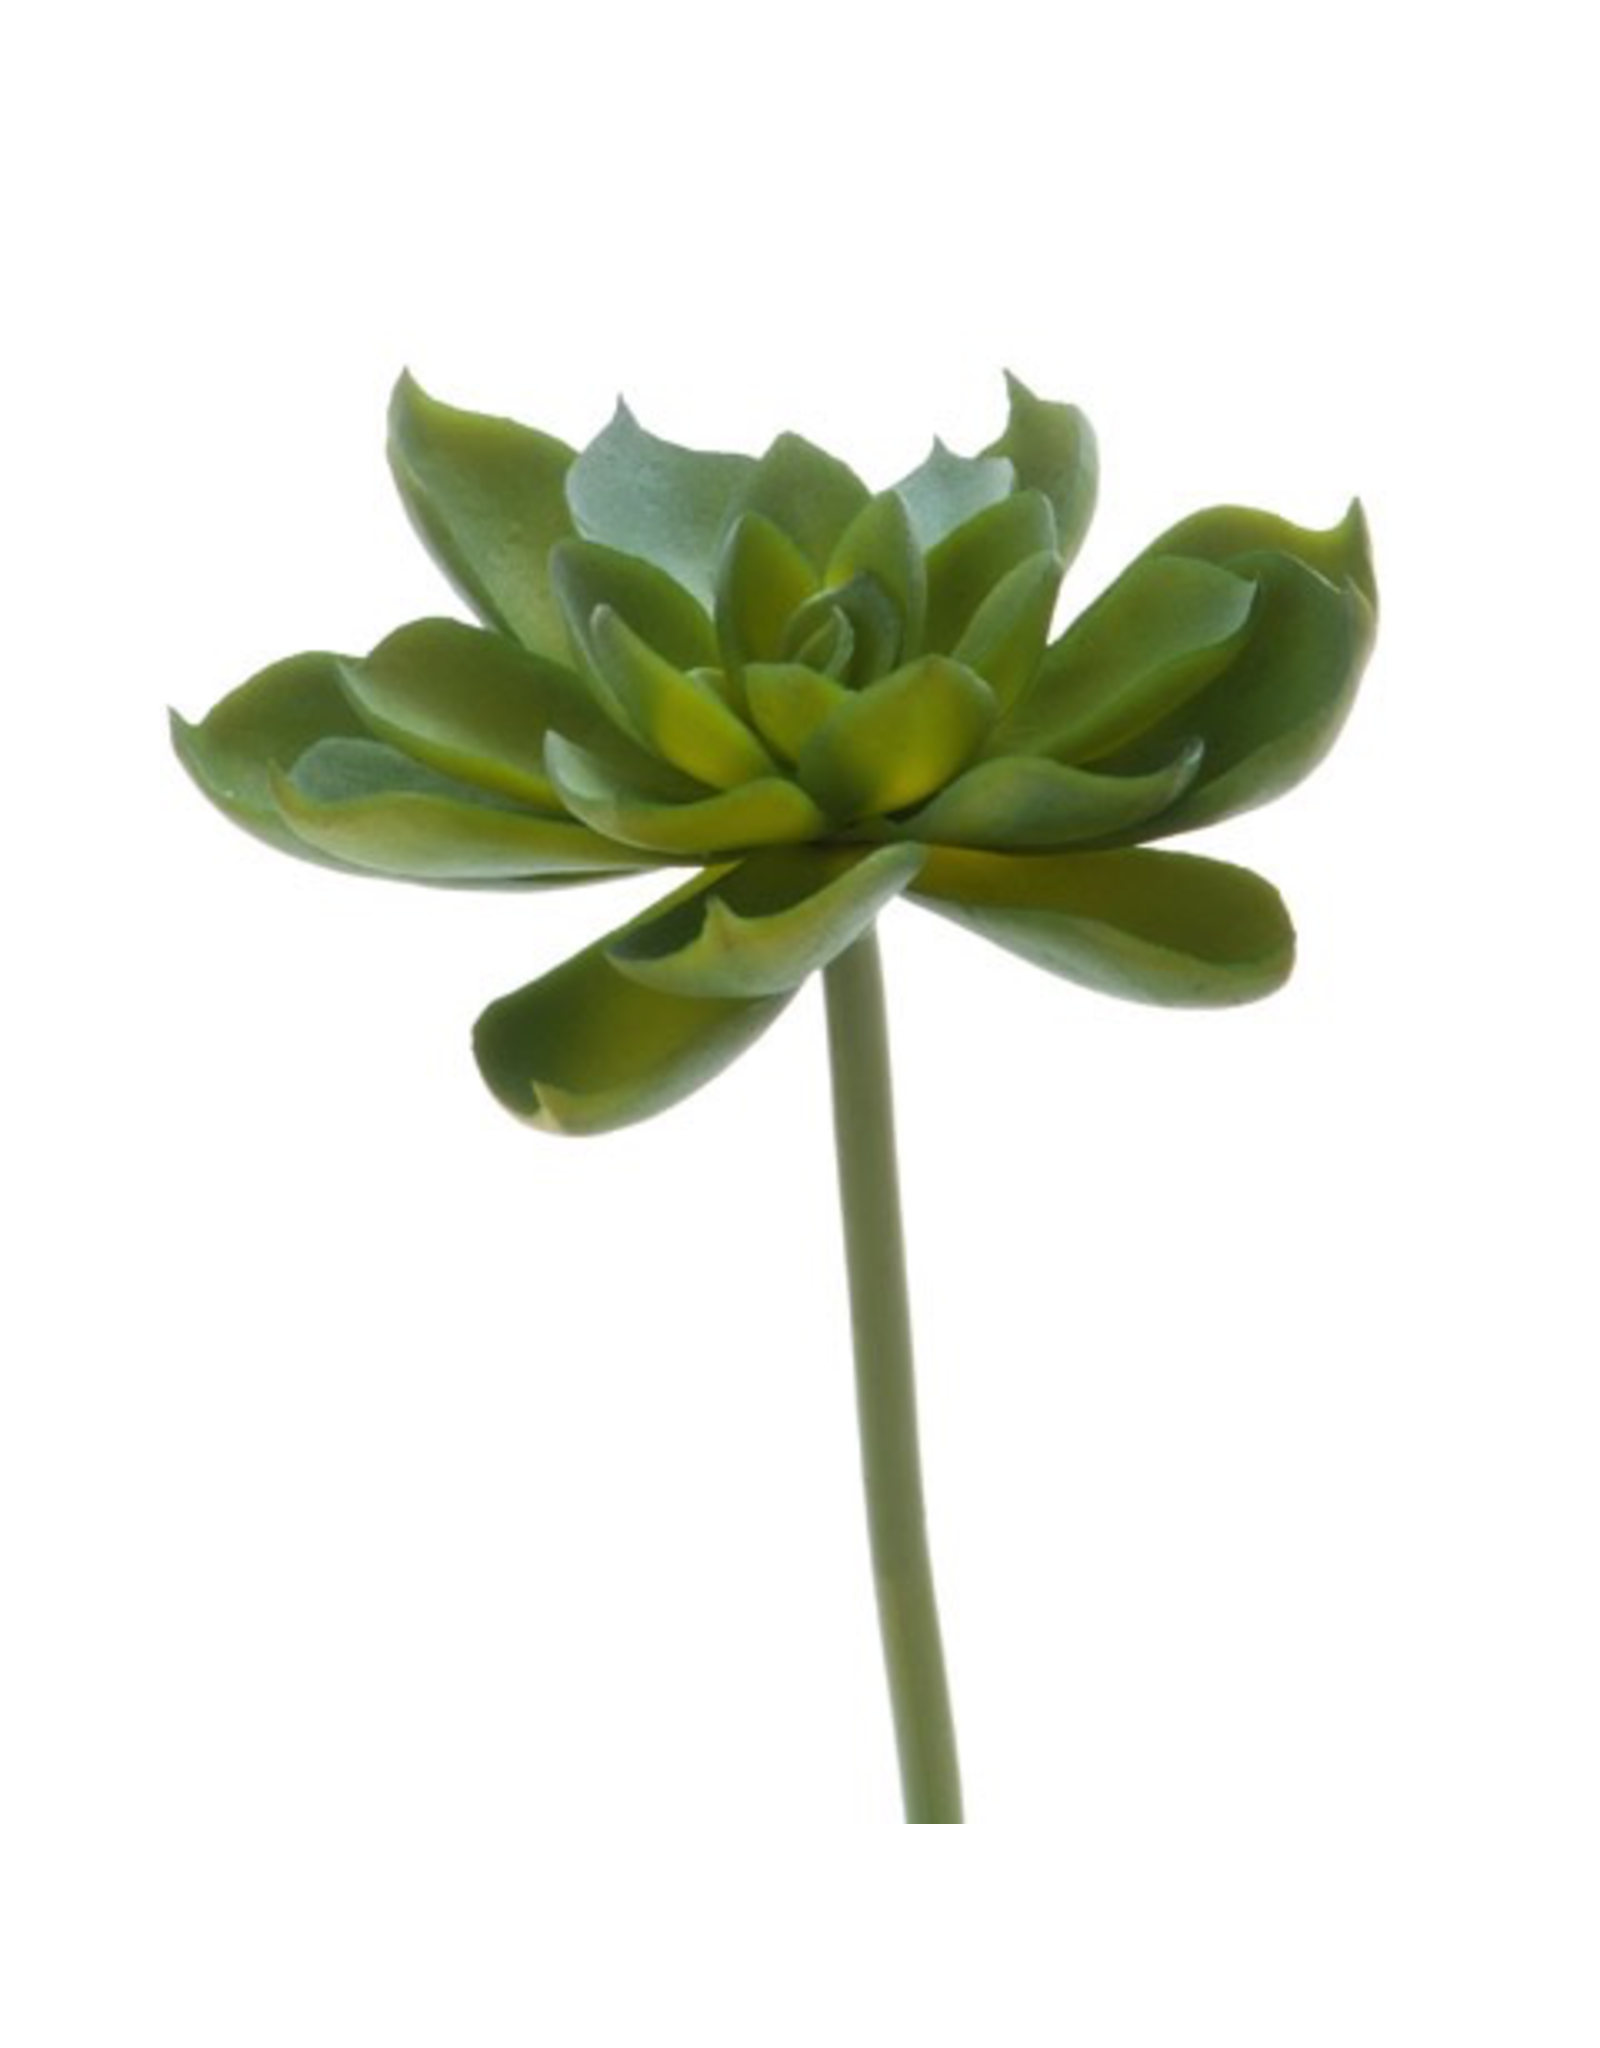 Darice Faux Succulent Green Echeveria Rosette 4.5 inch